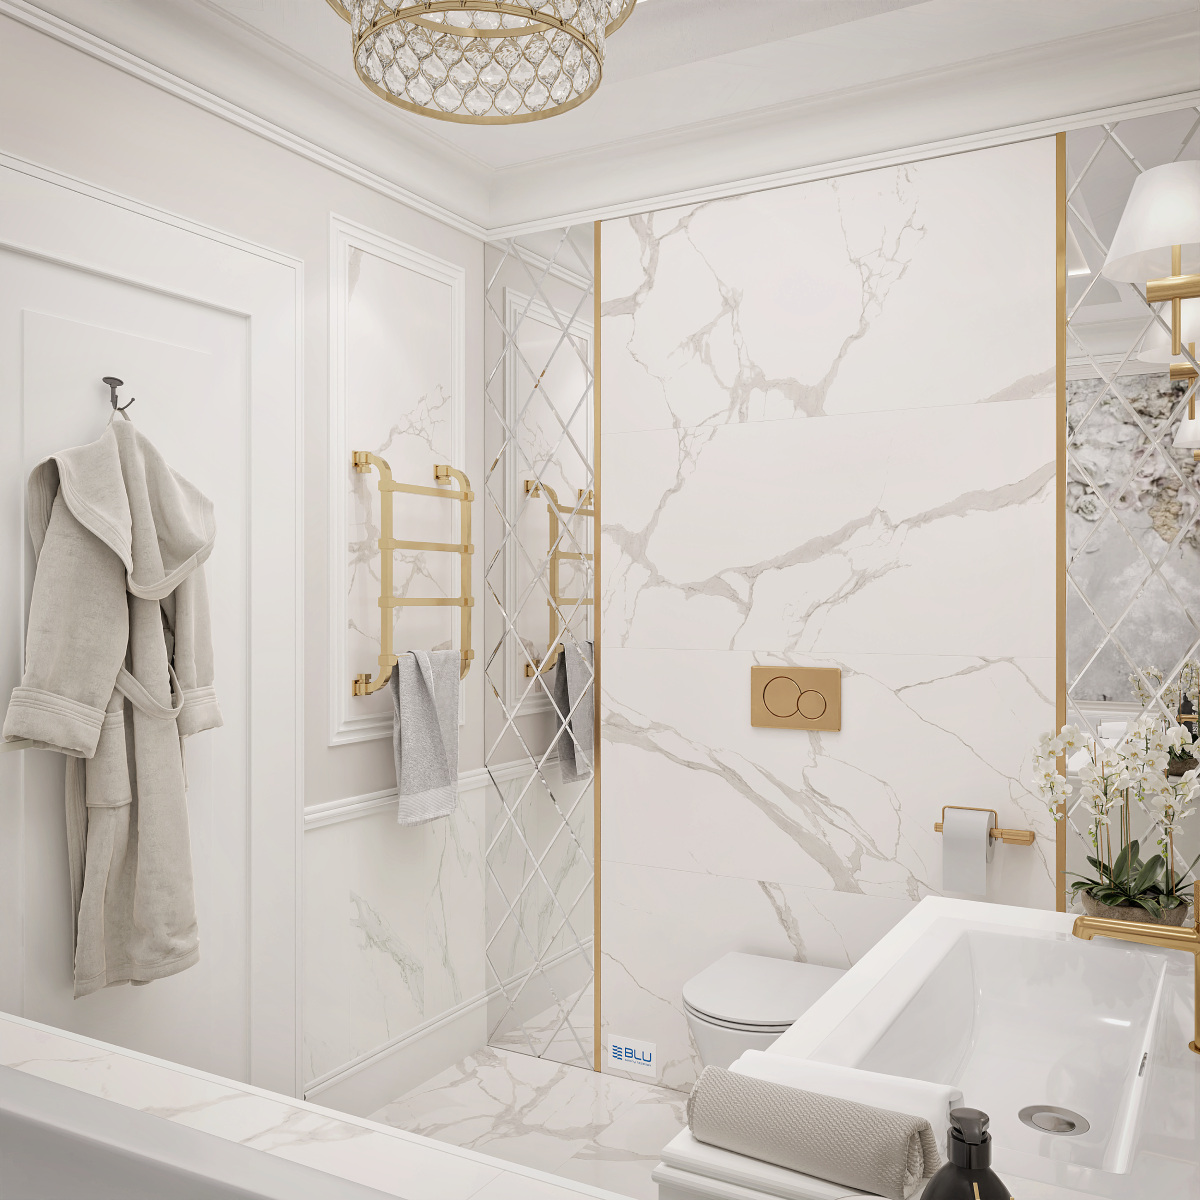 Biała łazienka w stylu klasycznym.